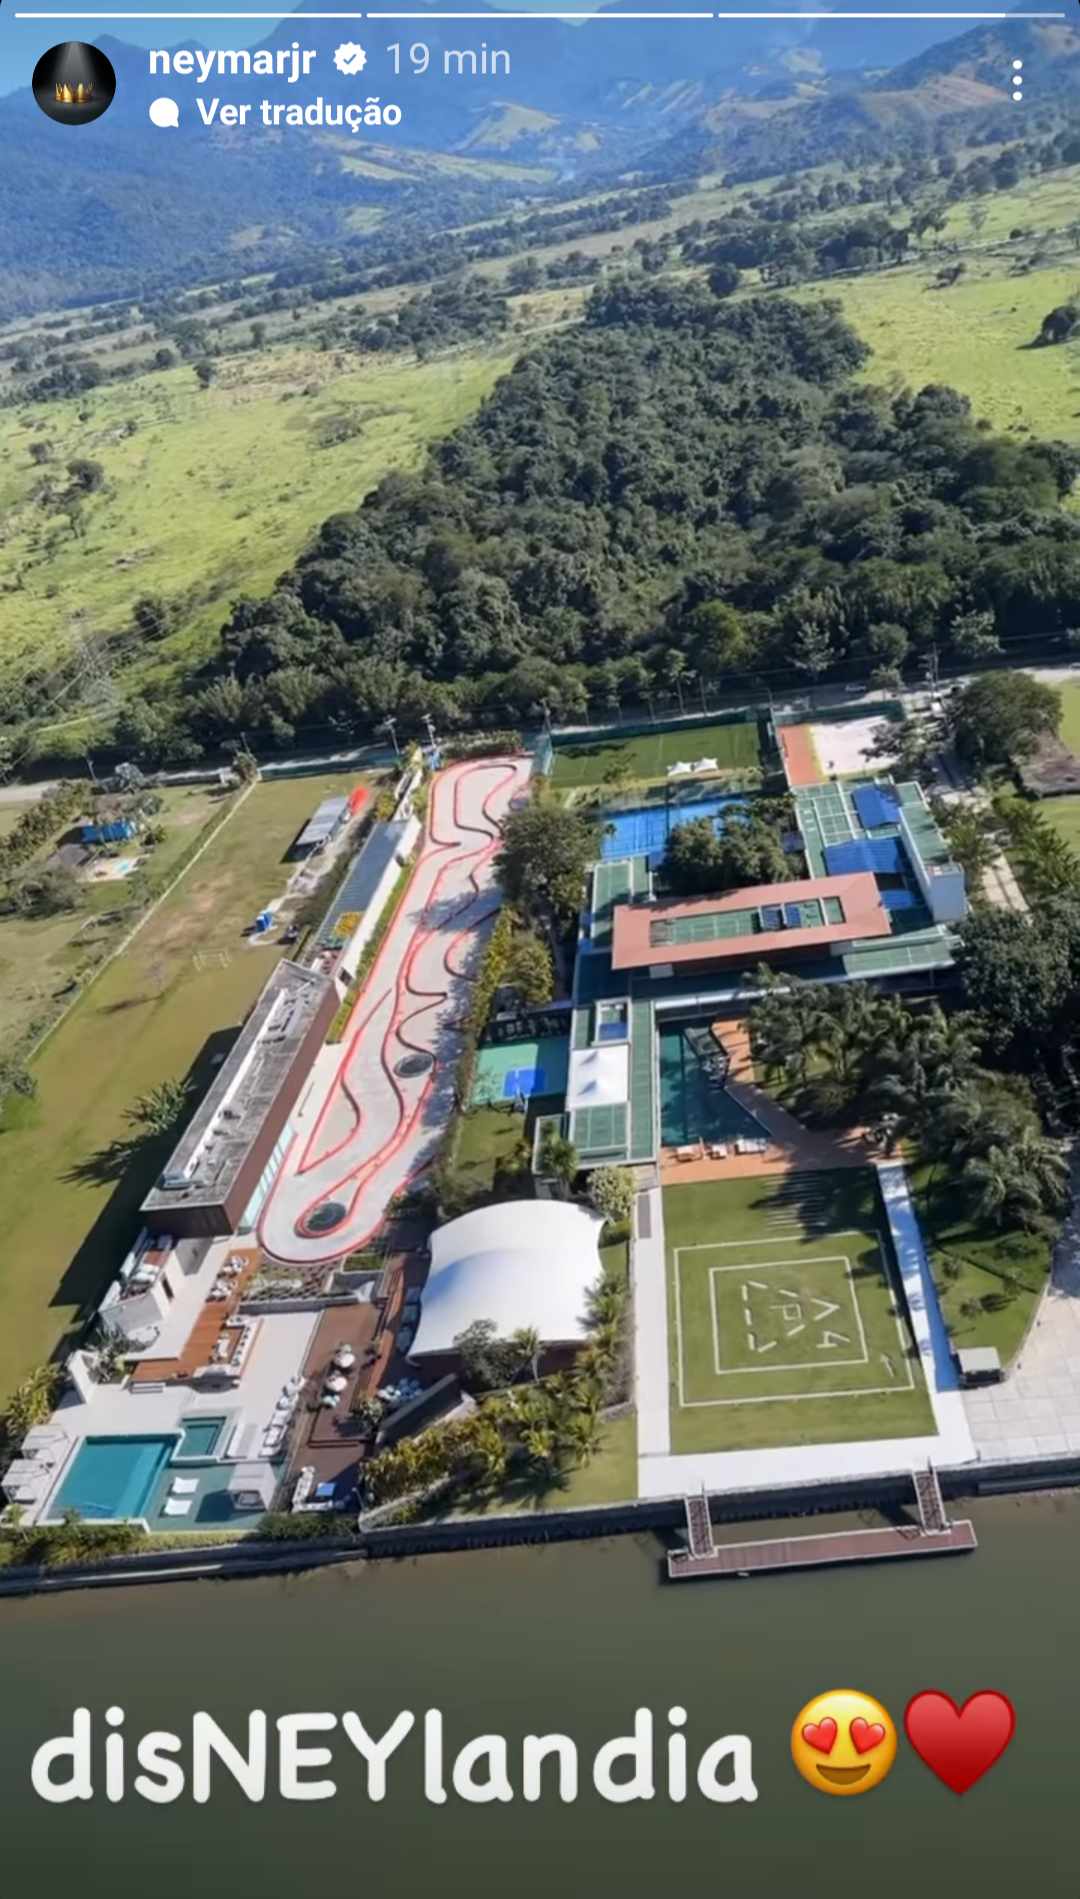 Neymar mostra visão aérea de mansão no Rio de Janeiro: "DisNEYlandia"